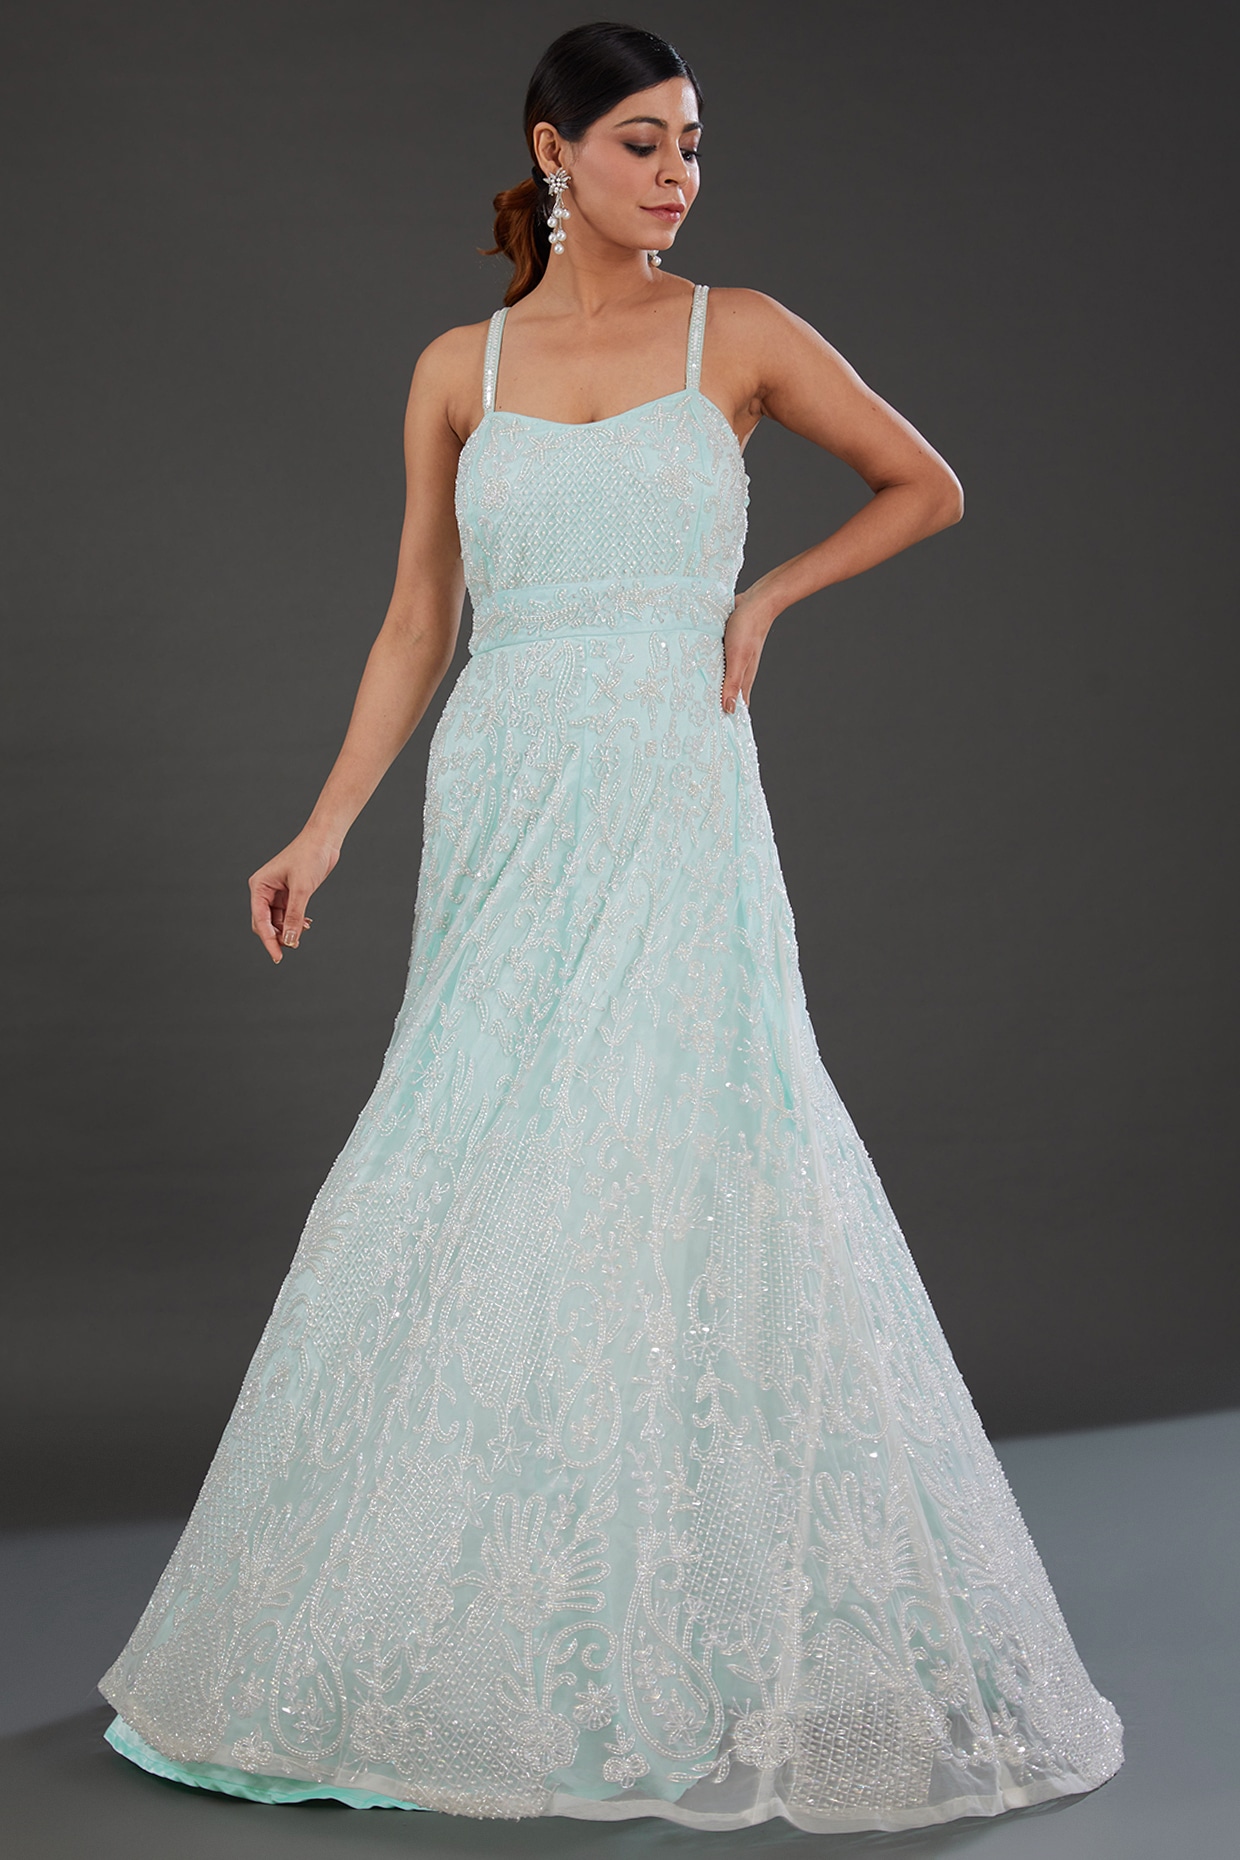 MUAR - modern minimalsit wedding gown – I SWEAR YOU